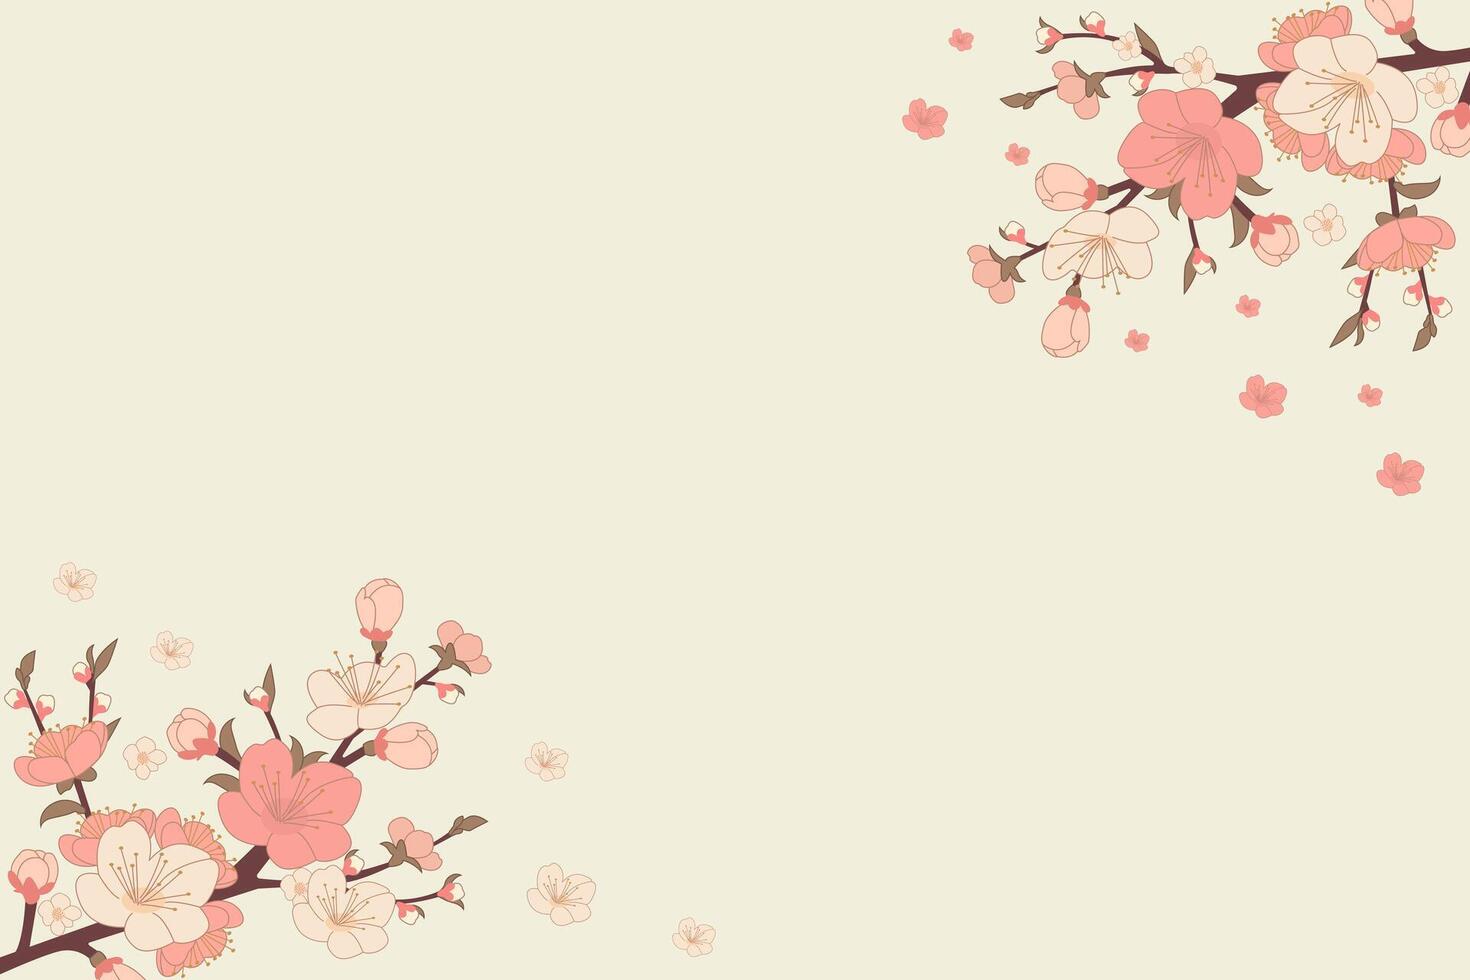 fleur de pêche branches. Japonais floraison des arbres, pêche fleurs, printemps décor vecteur illustration. bannière